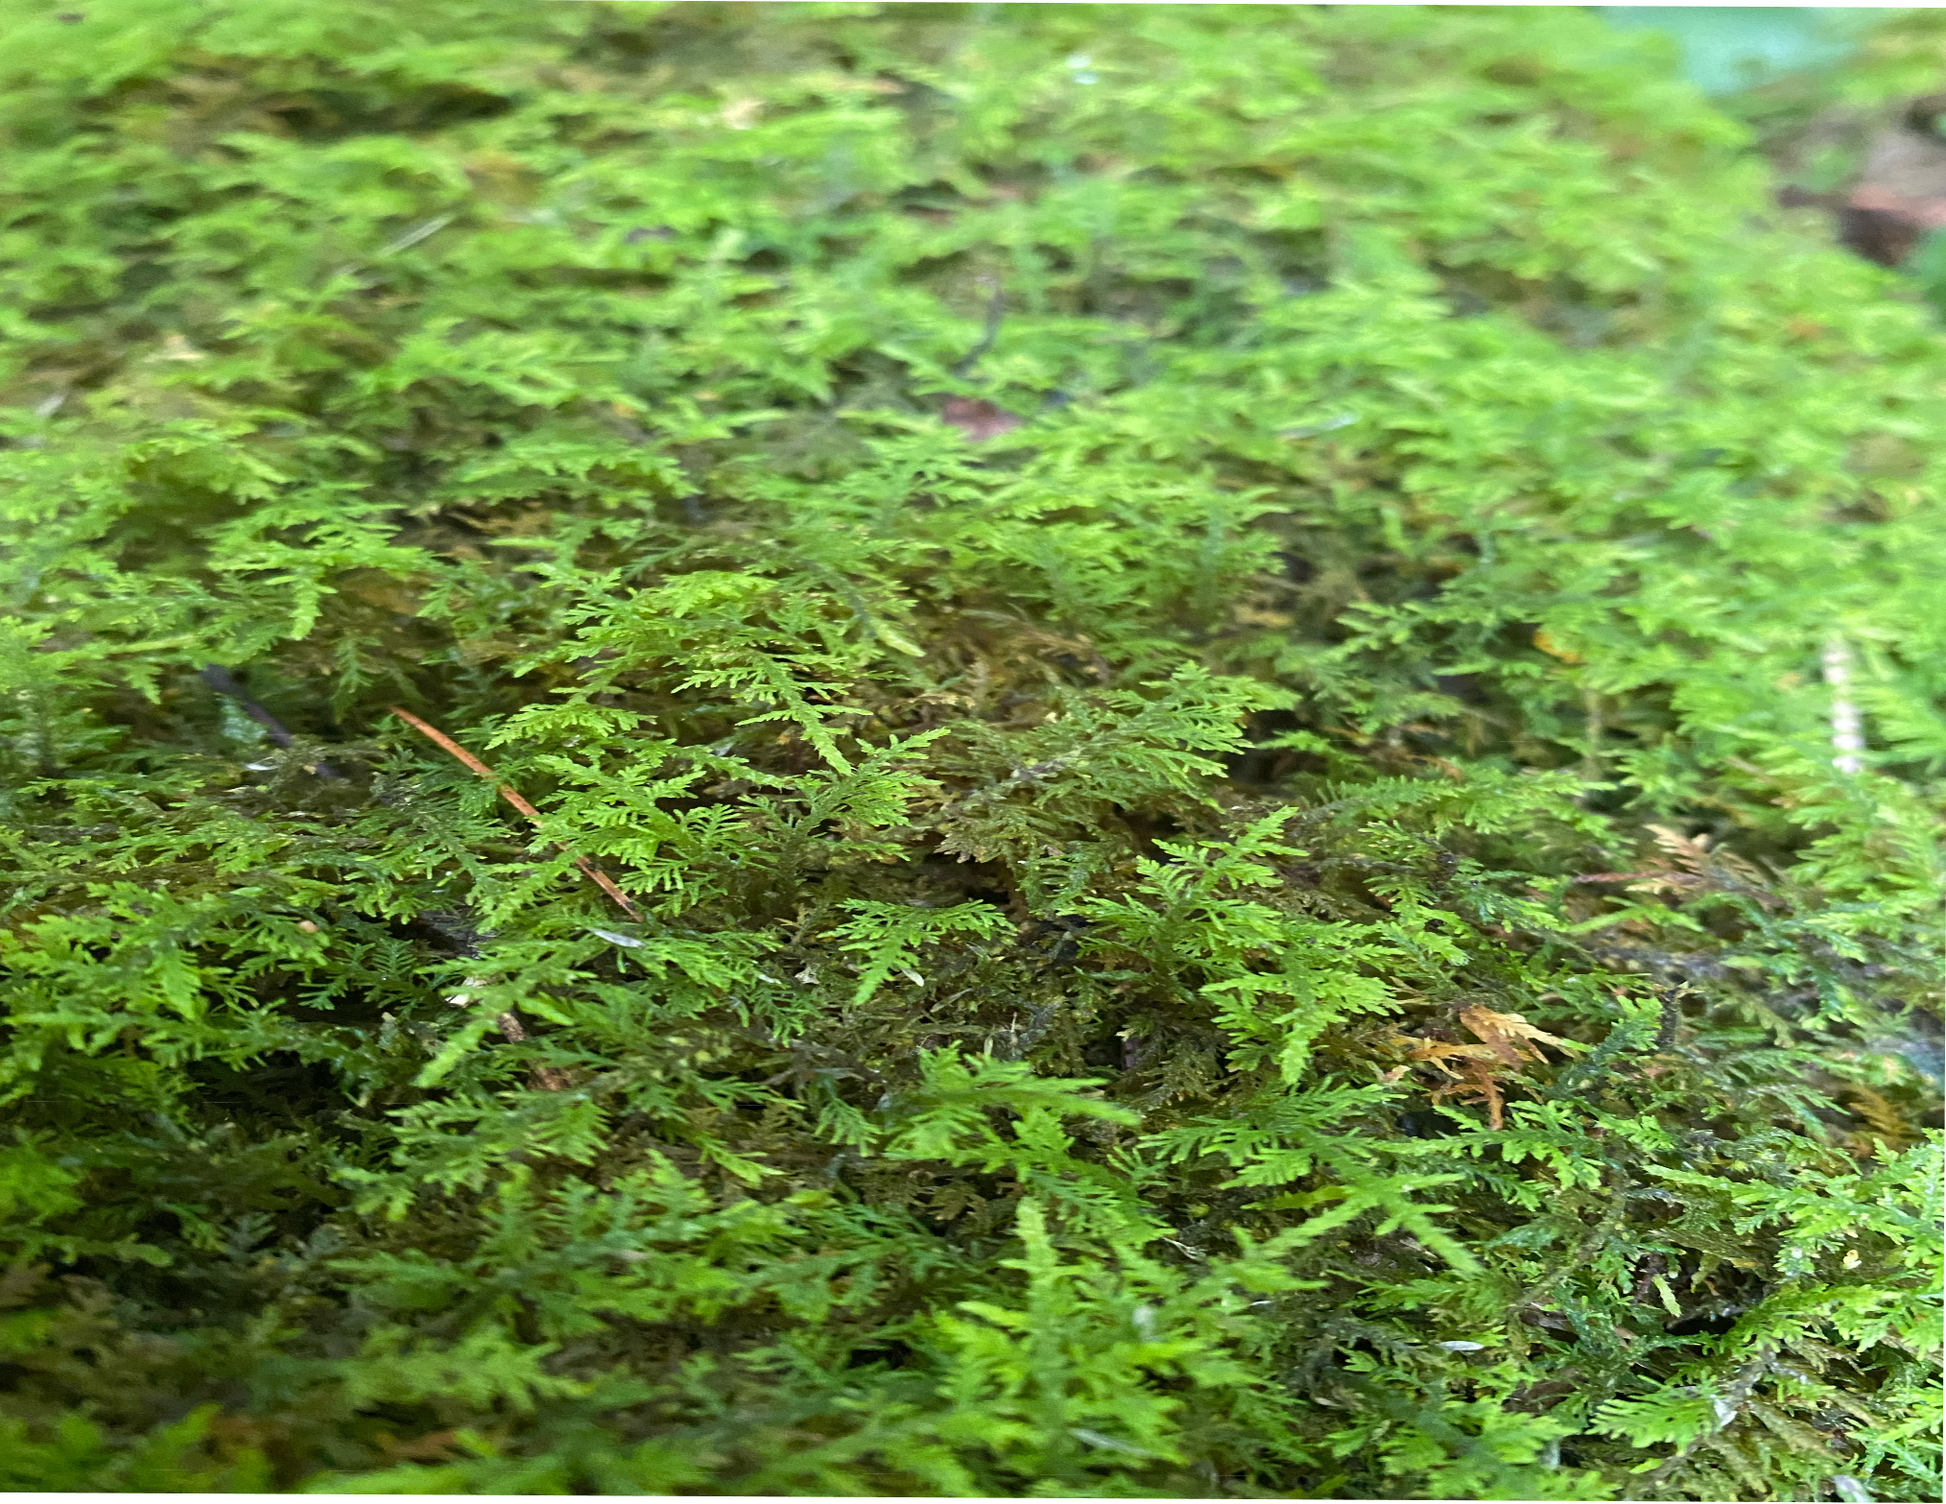 Reptile Moss Carpet Crawl Pets Fake Lawn Home Terrarium Cushion (Green) 